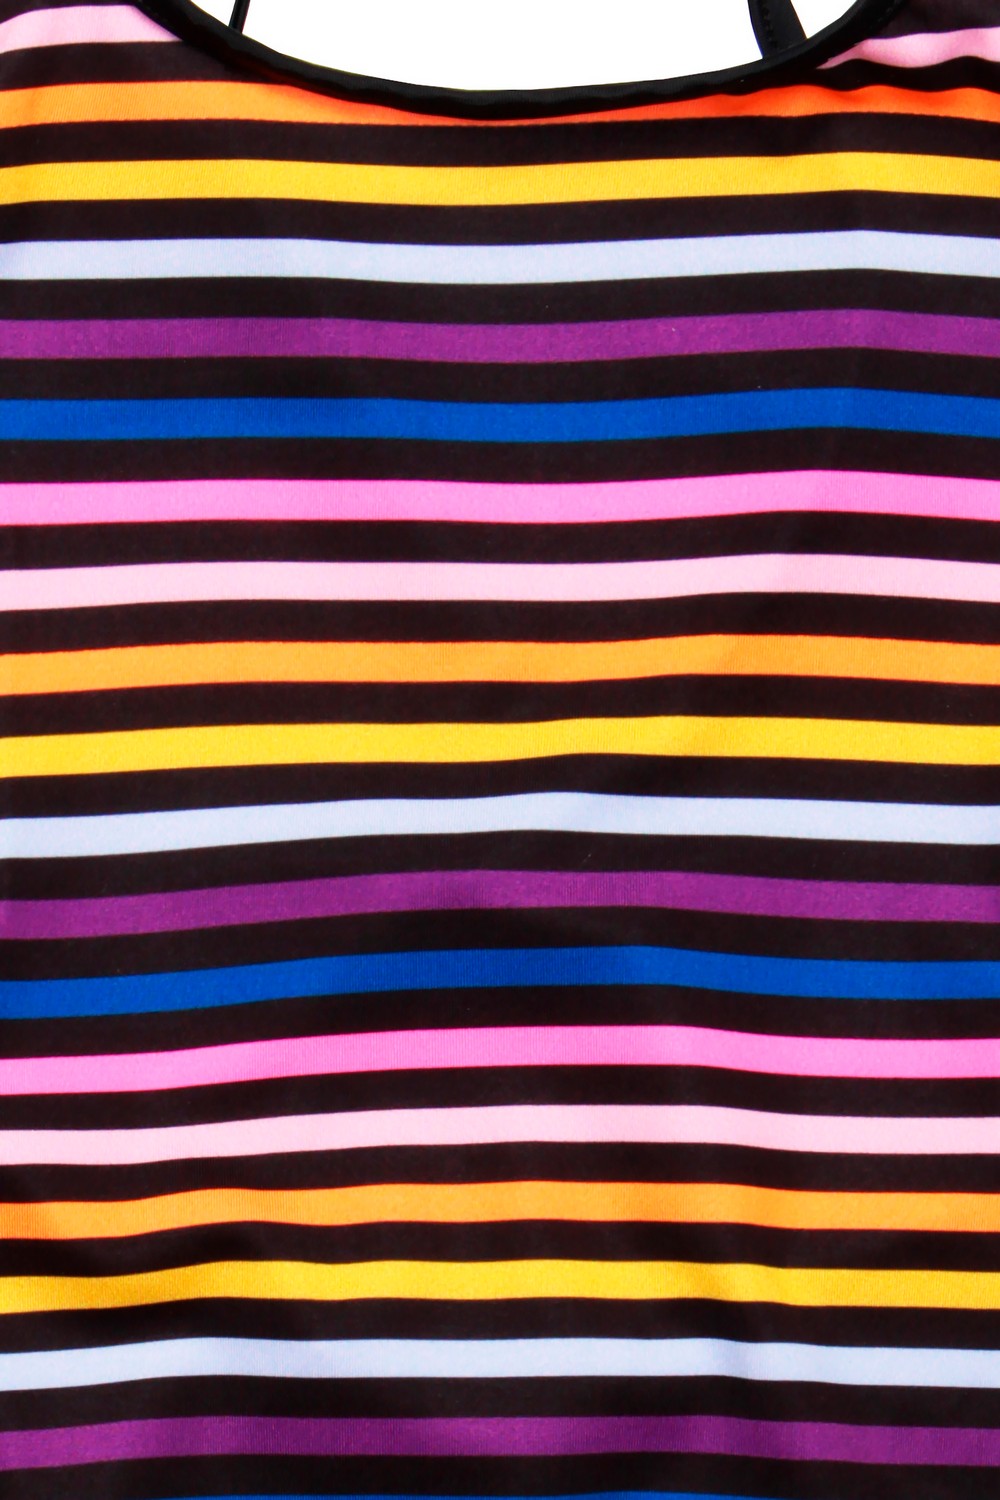 Sonia Rykiel Слитный купальник в разноцветную полоску